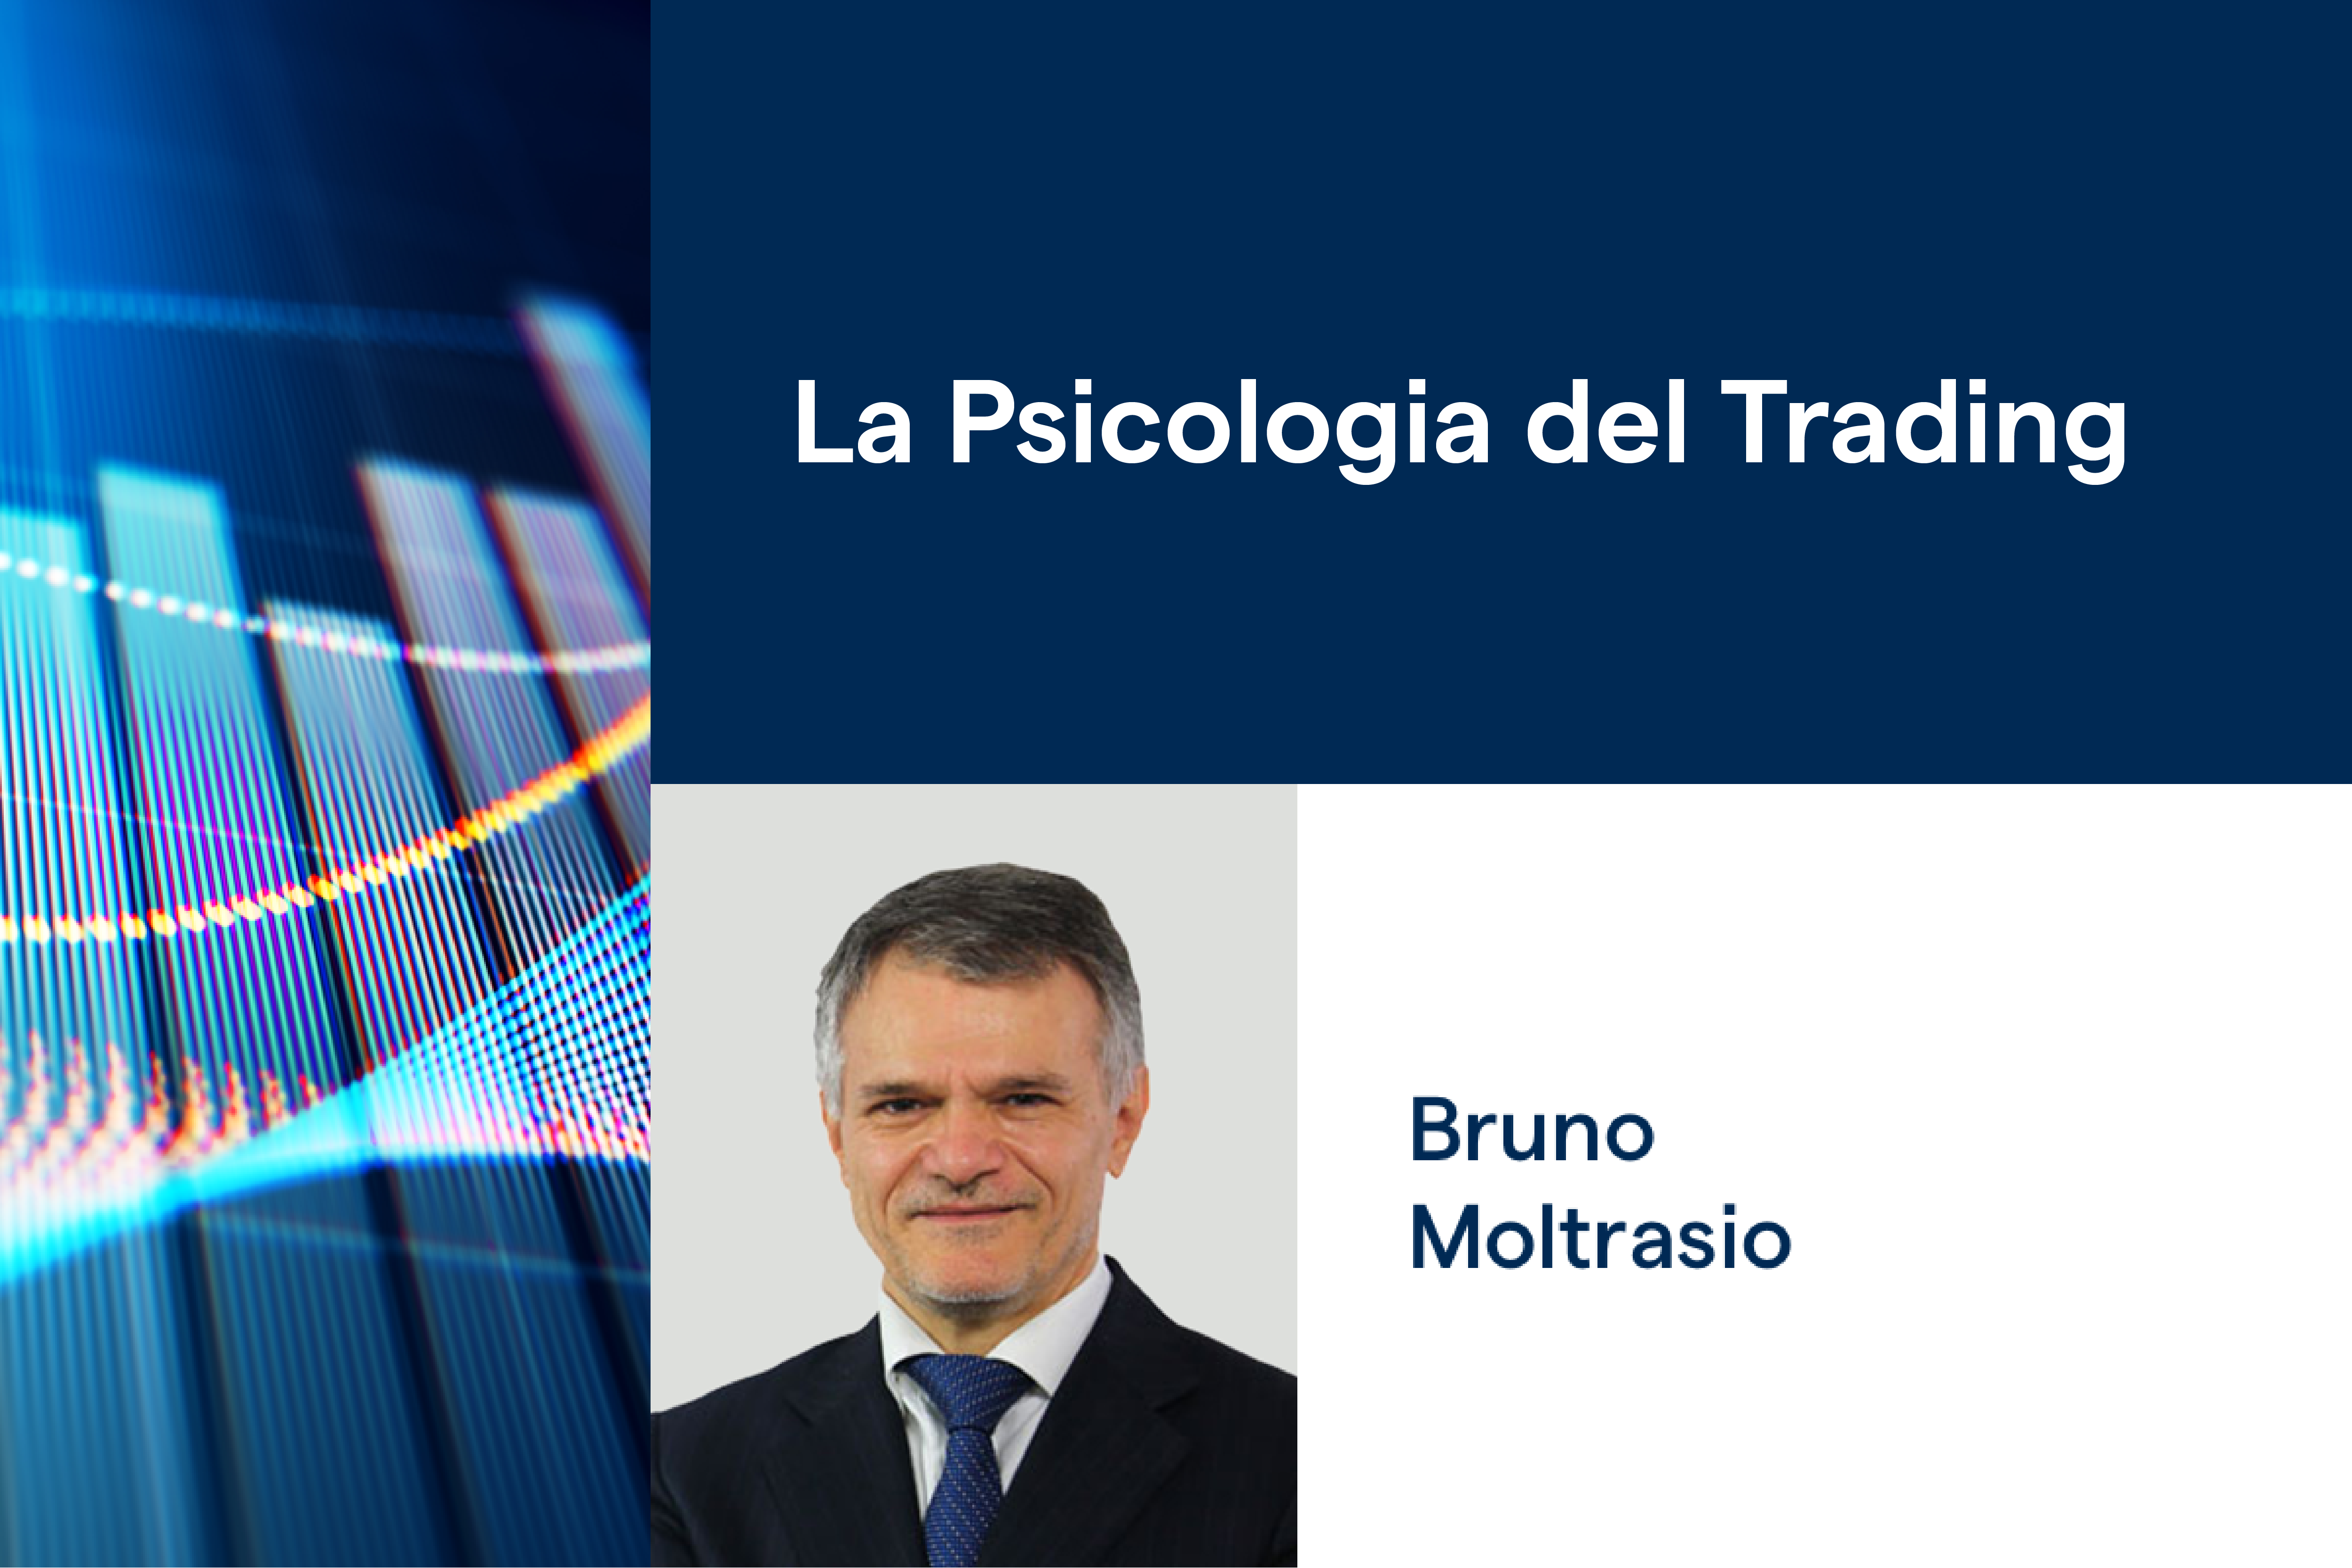 Bruno Moltrasio